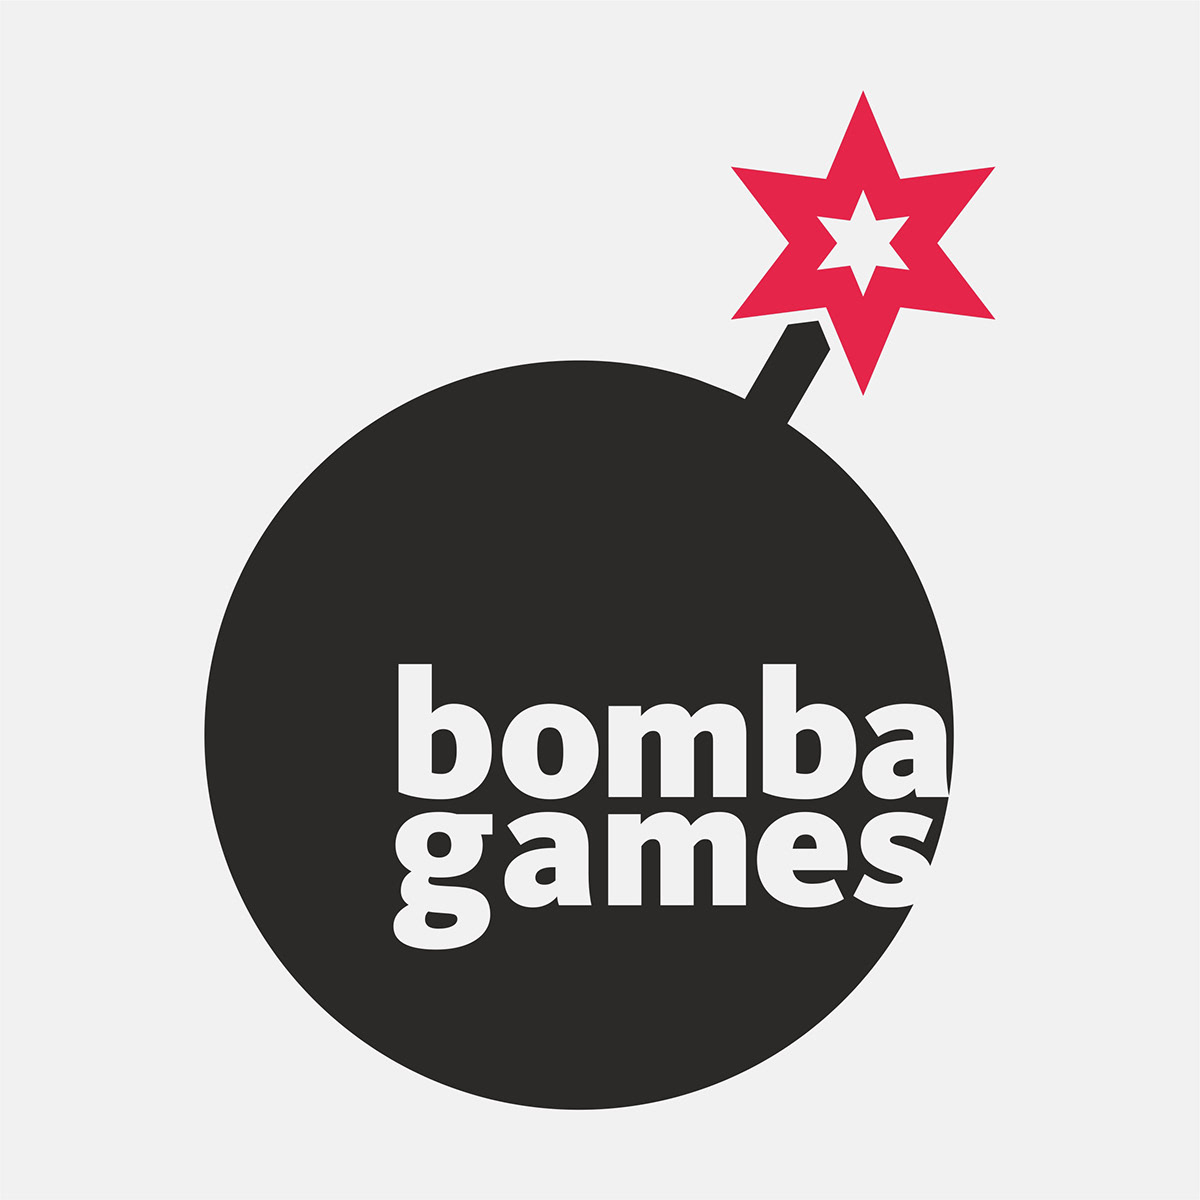 BOMBA GAMES naming